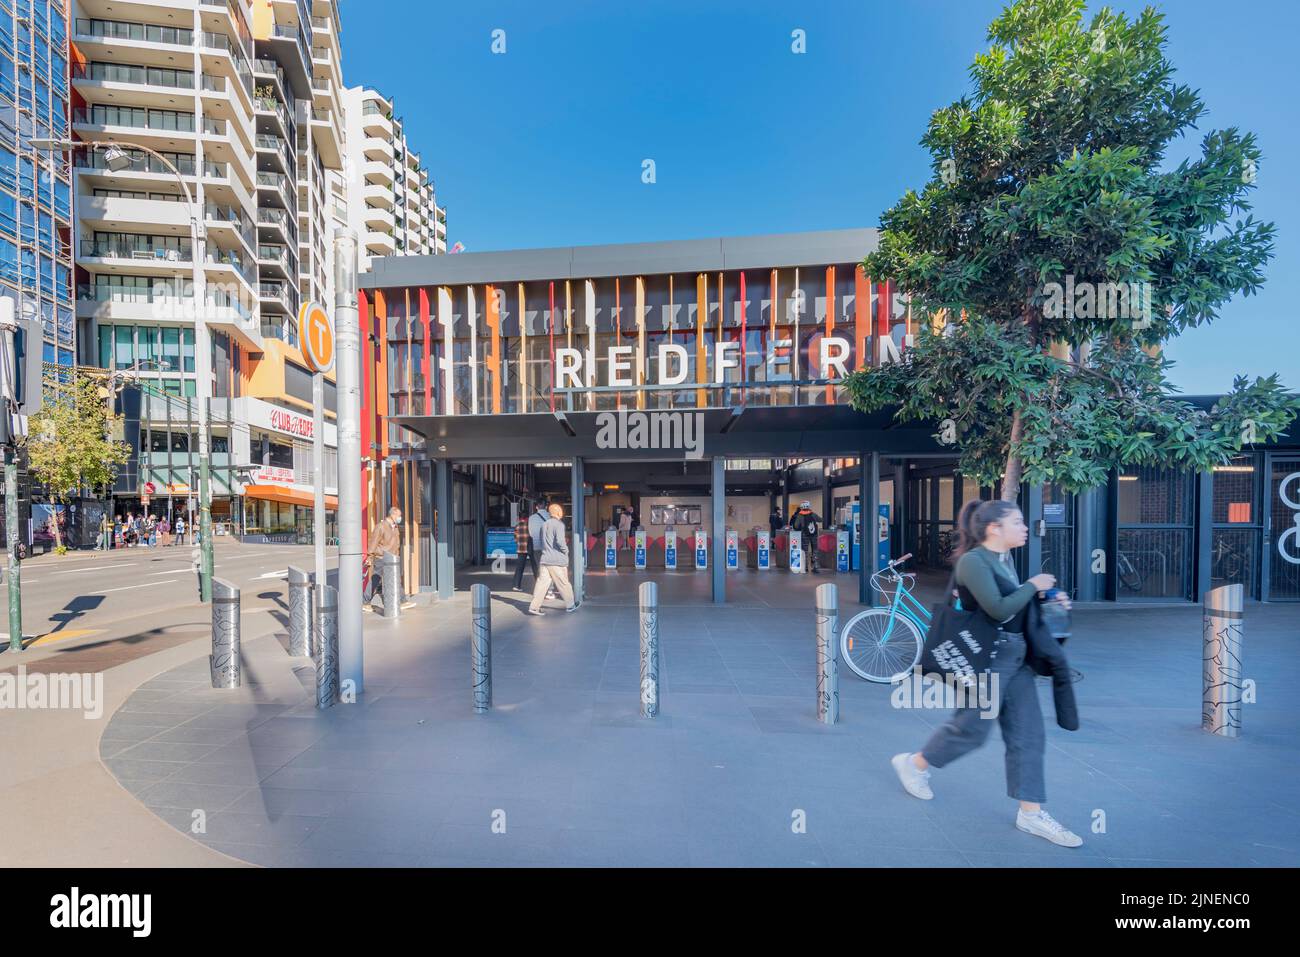 La entrada de Gibbons Street a la estación de tren de Redfern, en Australia, fue renovada y mejorada en 2018 Foto de stock